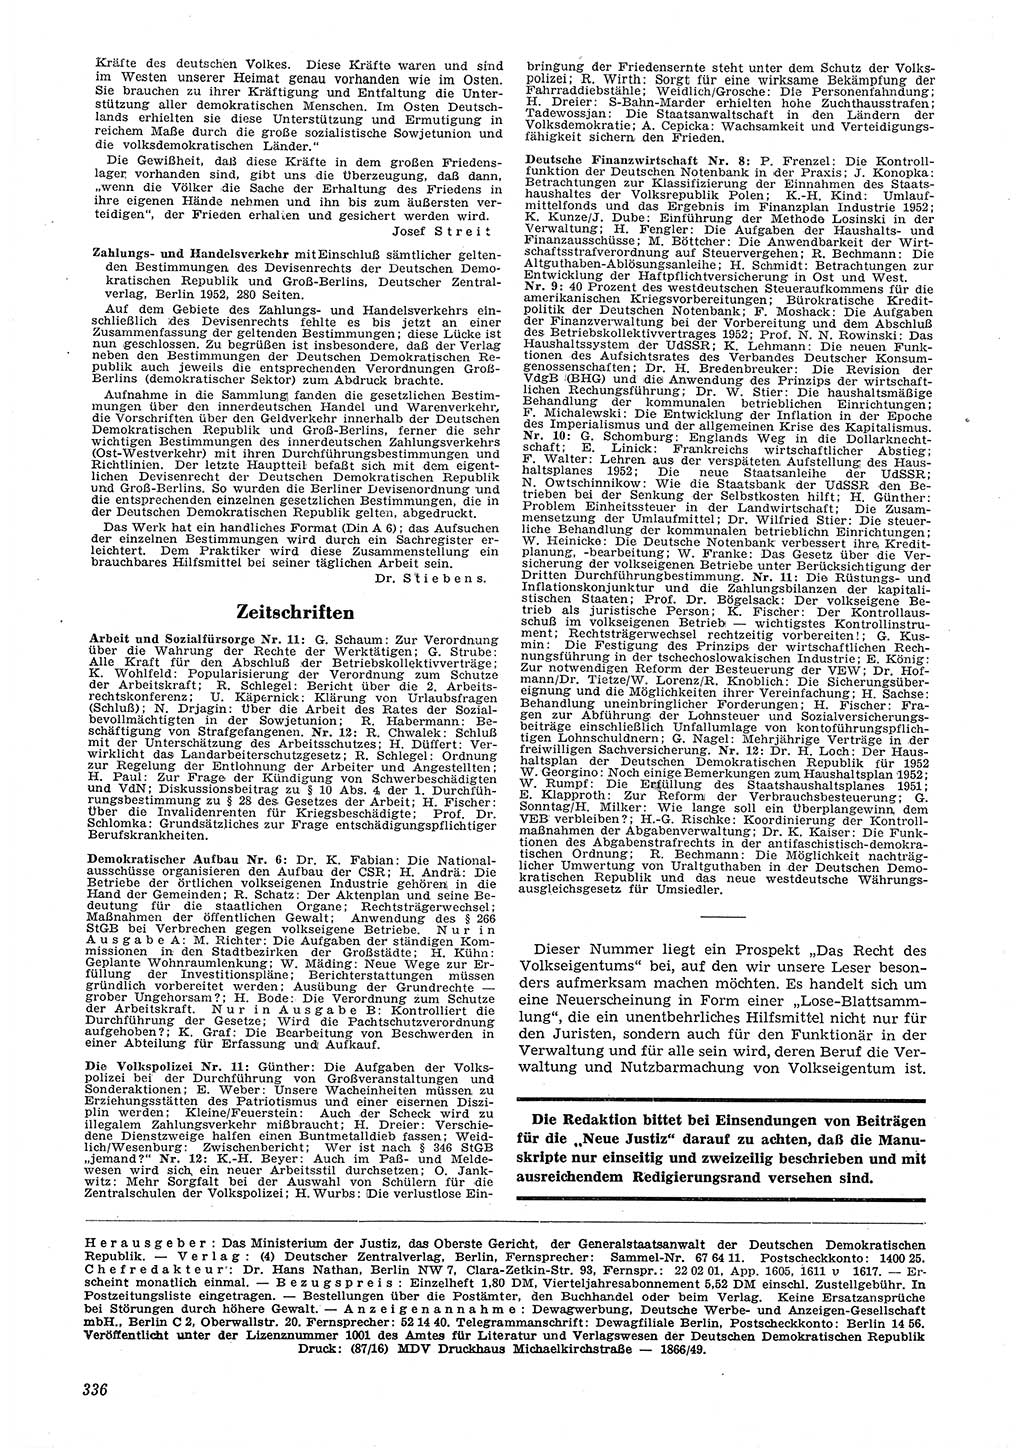 Neue Justiz (NJ), Zeitschrift für Recht und Rechtswissenschaft [Deutsche Demokratische Republik (DDR)], 6. Jahrgang 1952, Seite 336 (NJ DDR 1952, S. 336)